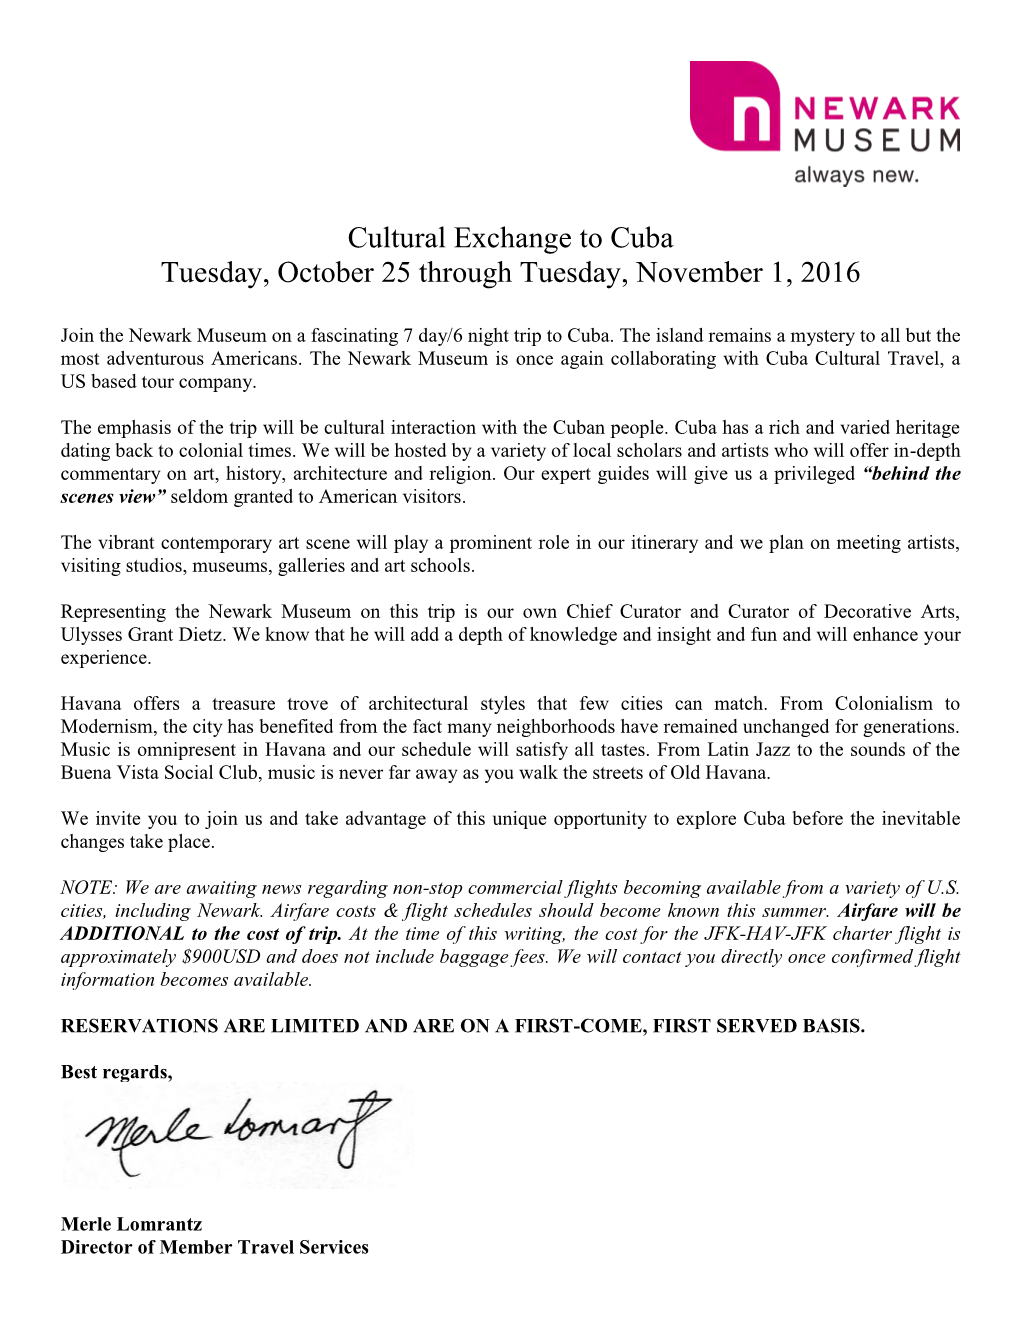 Cultural Exchange to Cuba Tuesday, October 25 Through Tuesday, November 1, 2016